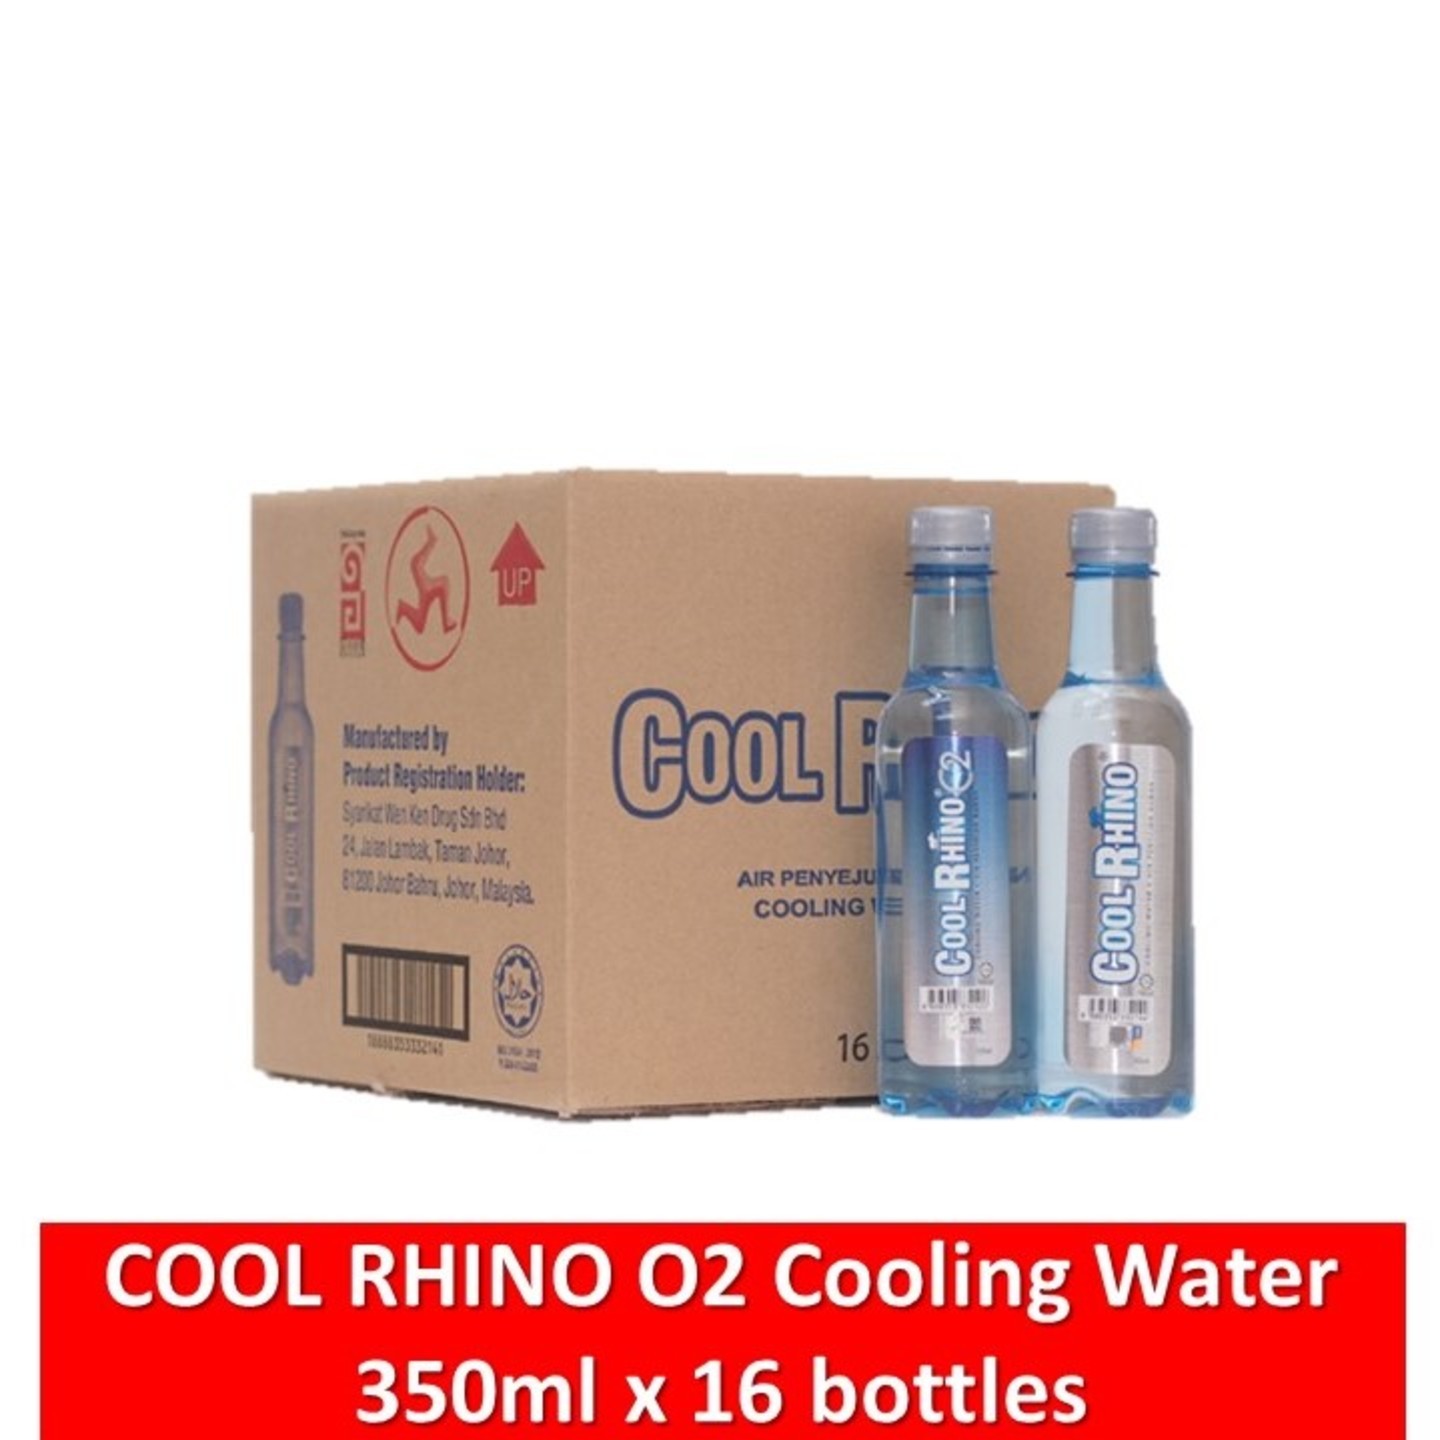 CARTON COOL RHINO O2 COOLING WATER 350ML x 16